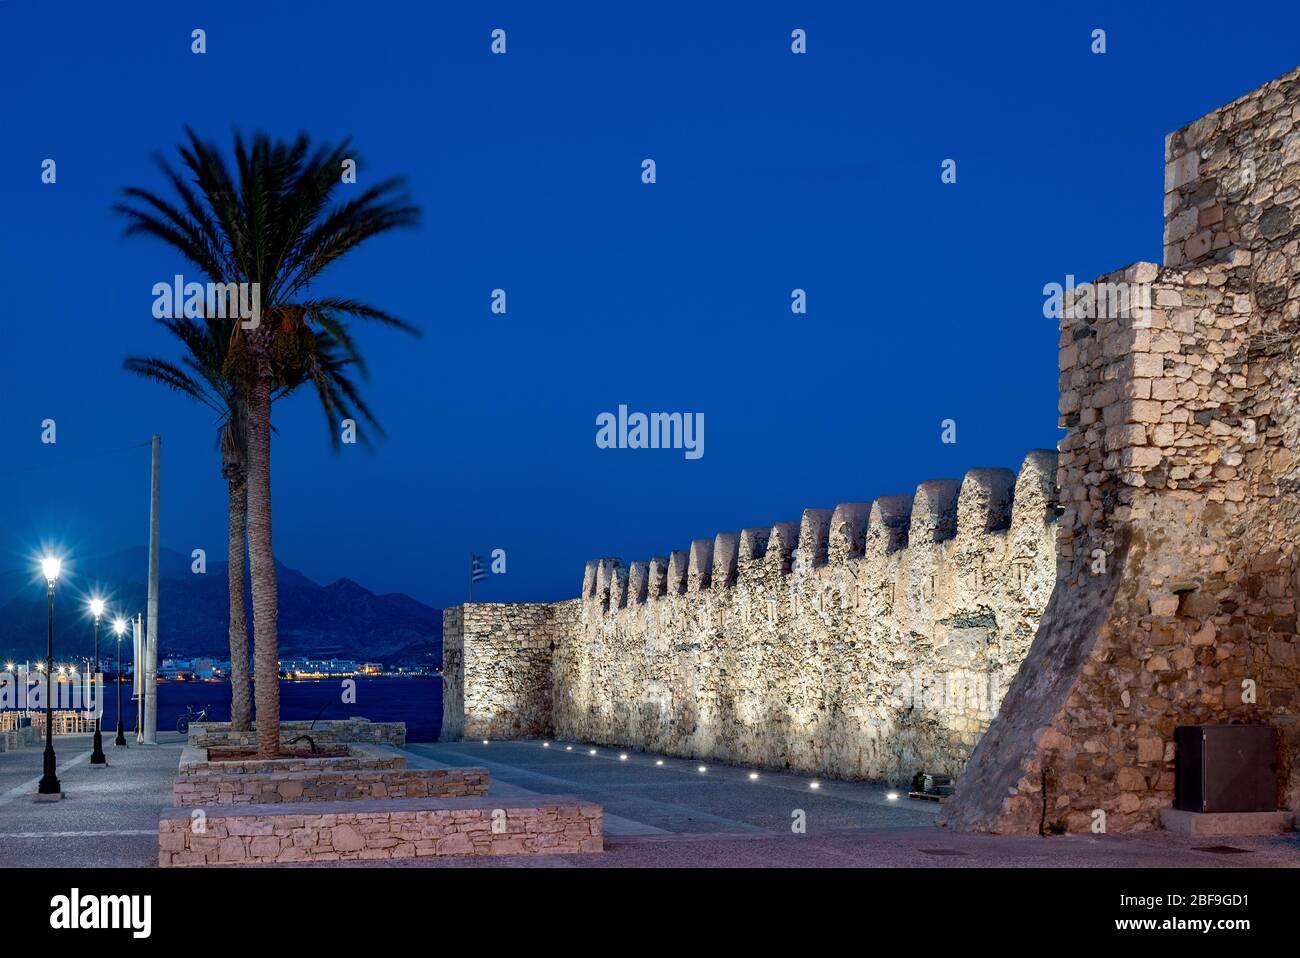 Blick auf die alte venezianische Burg von Ierapetra, bekannt unter dem türkischen Namen "Kales". Lassithi, Kreta, Griechenland. Stockfoto